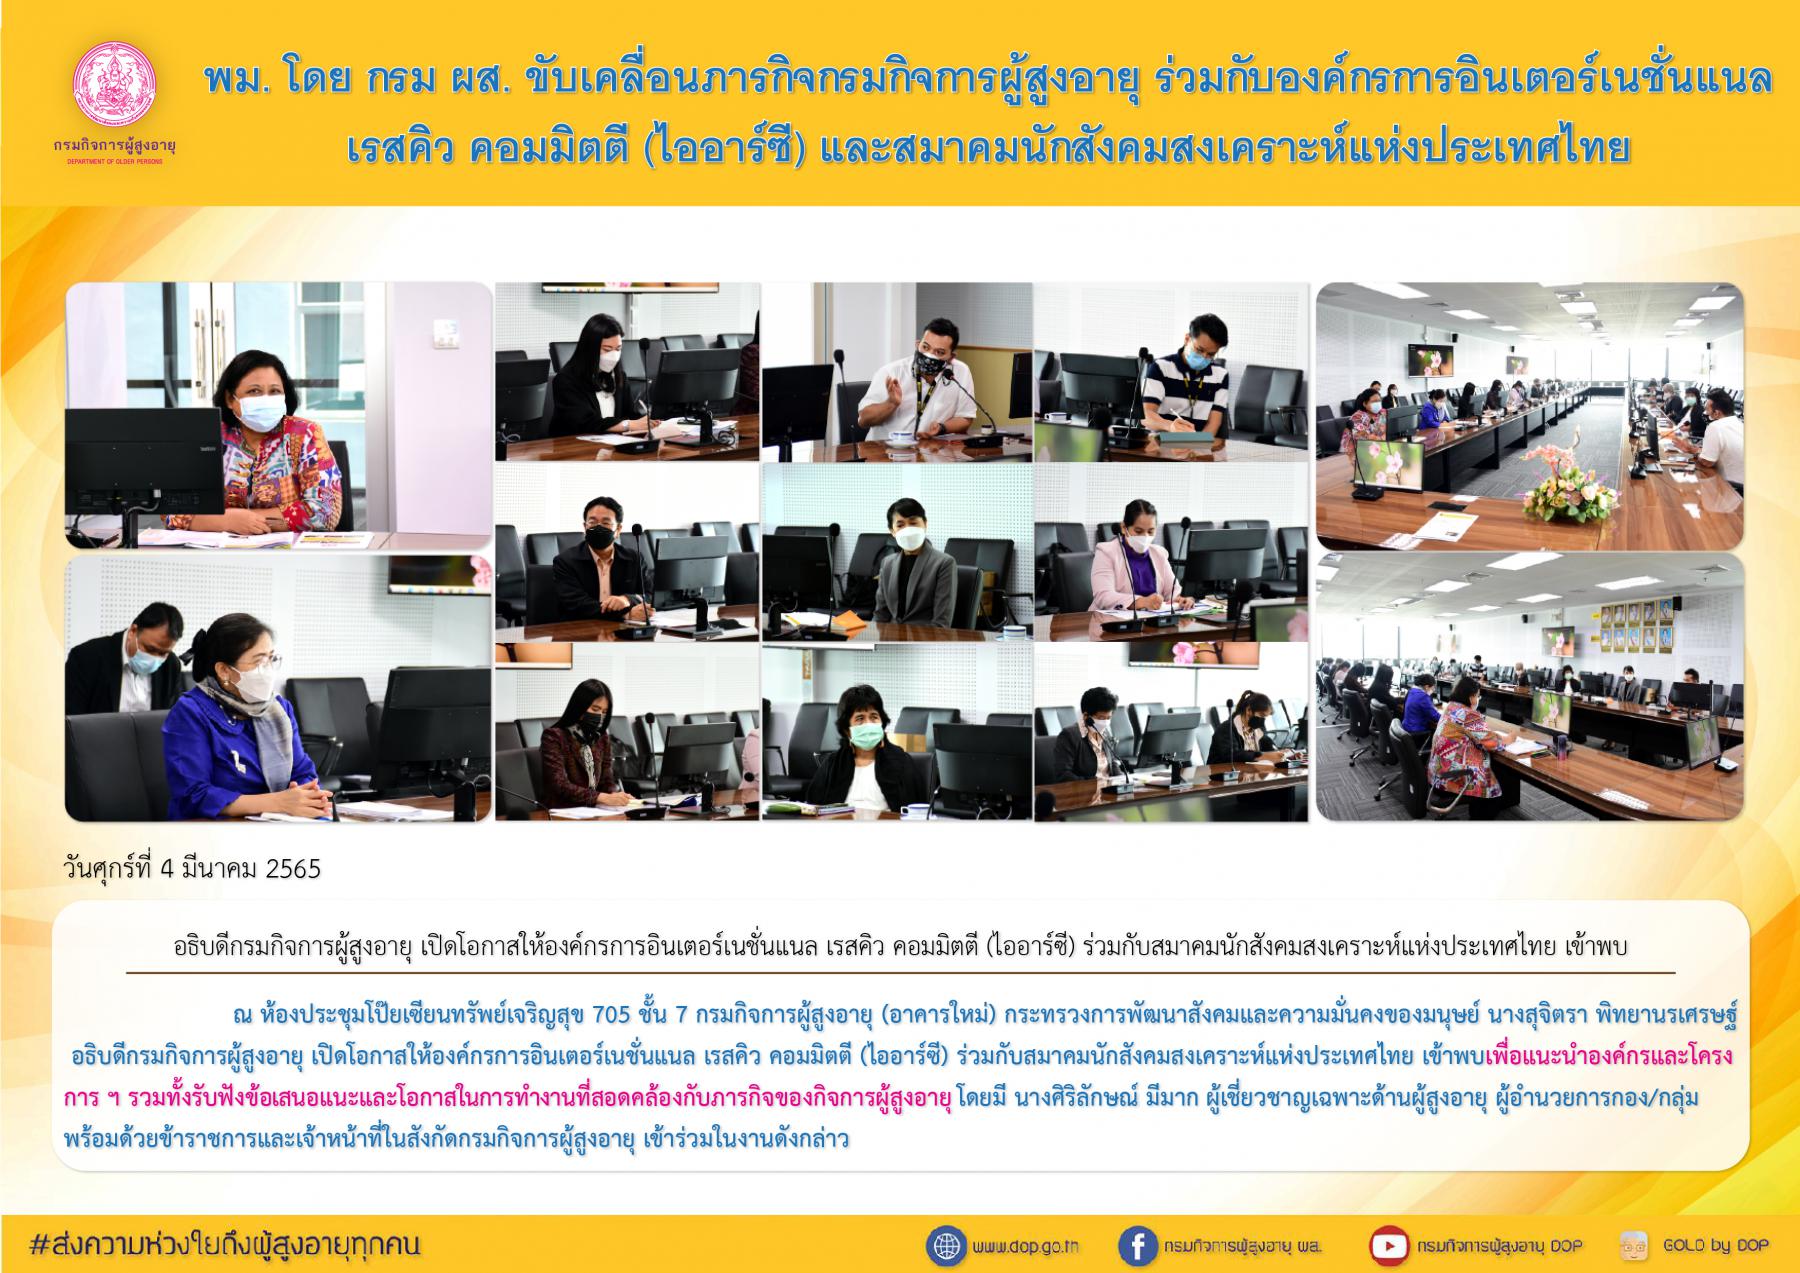 พม. โดย กรม ผส. ขับเคลื่อนภารกิจกรมกิจการผู้สูงอายุ ร่วมกับองค์กรการอินเตอร์เนชั่นแนล เรสคิว คอมมิตตี (ไออาร์ซี) ร่วมกับสมาคมนักสังคมสงเคราะห์แห่งประเทศไทย